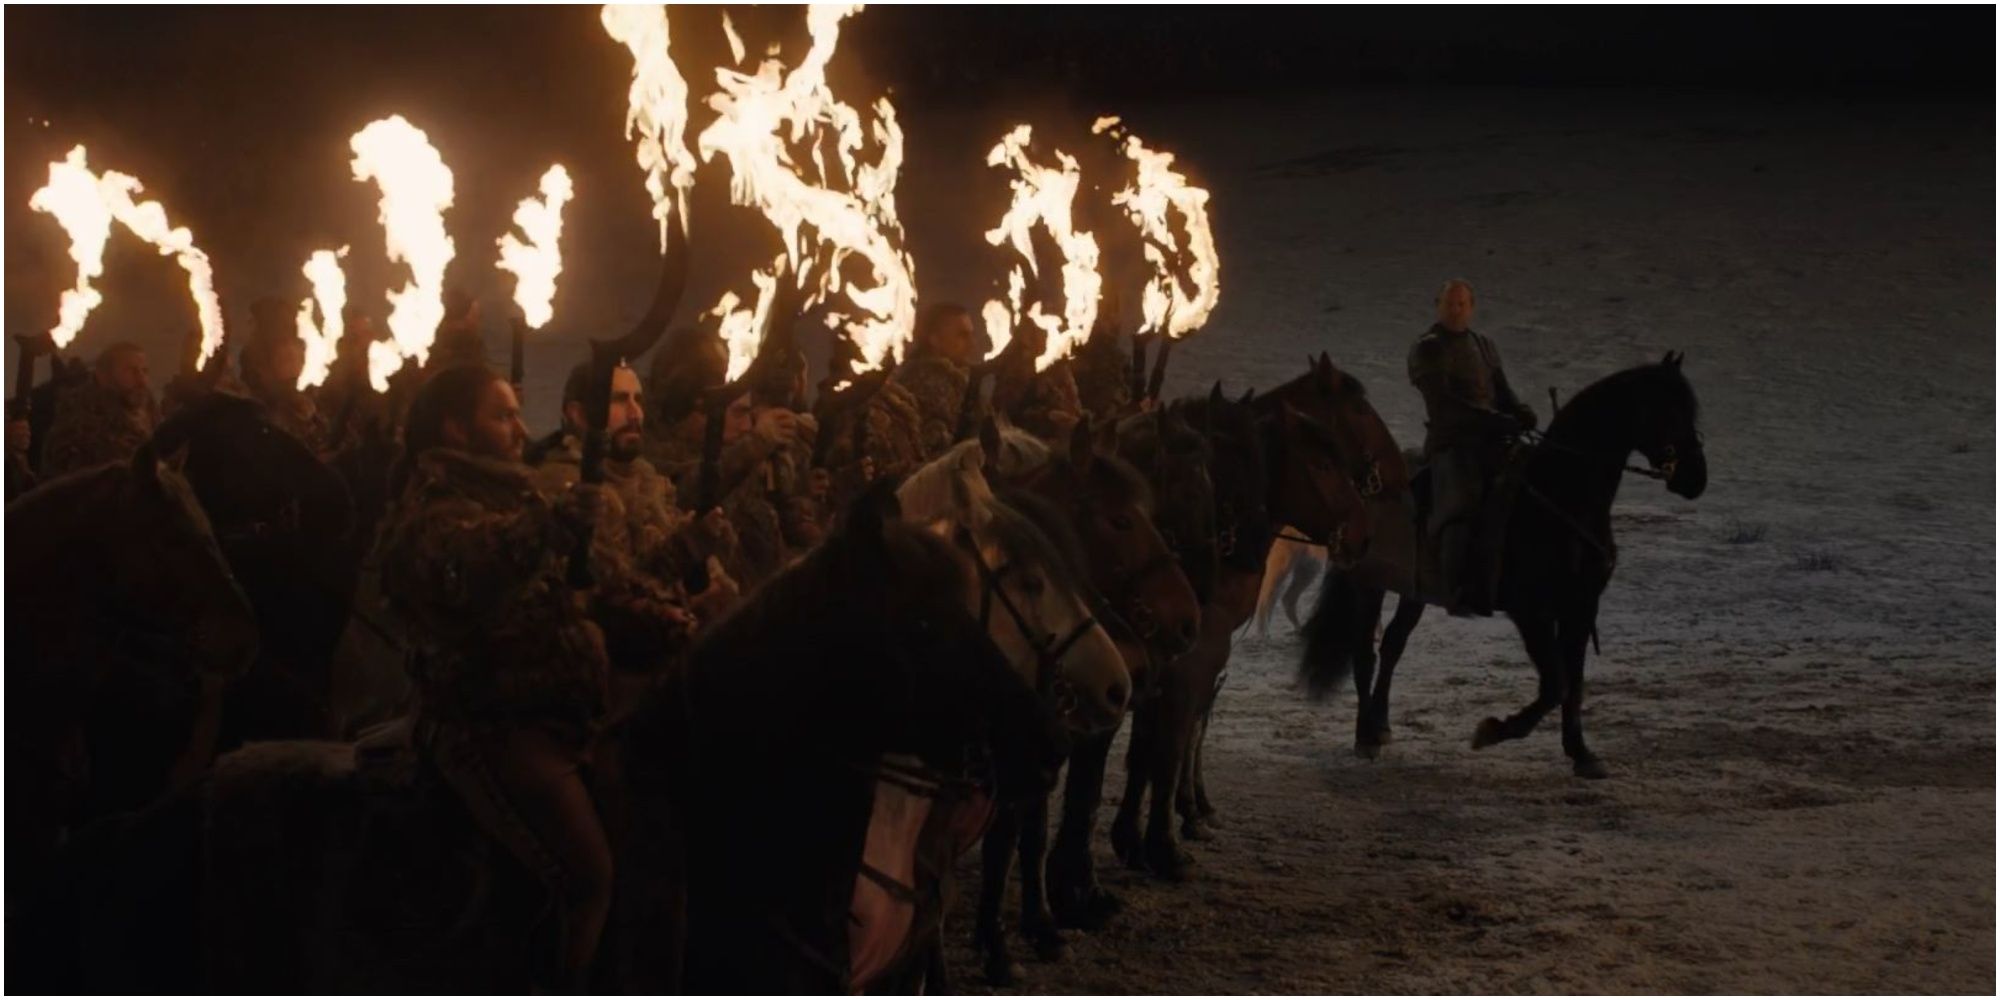  Melisandre lights the Dothraki Arakhs before the Battle of Winterfell in Game of Thrones.